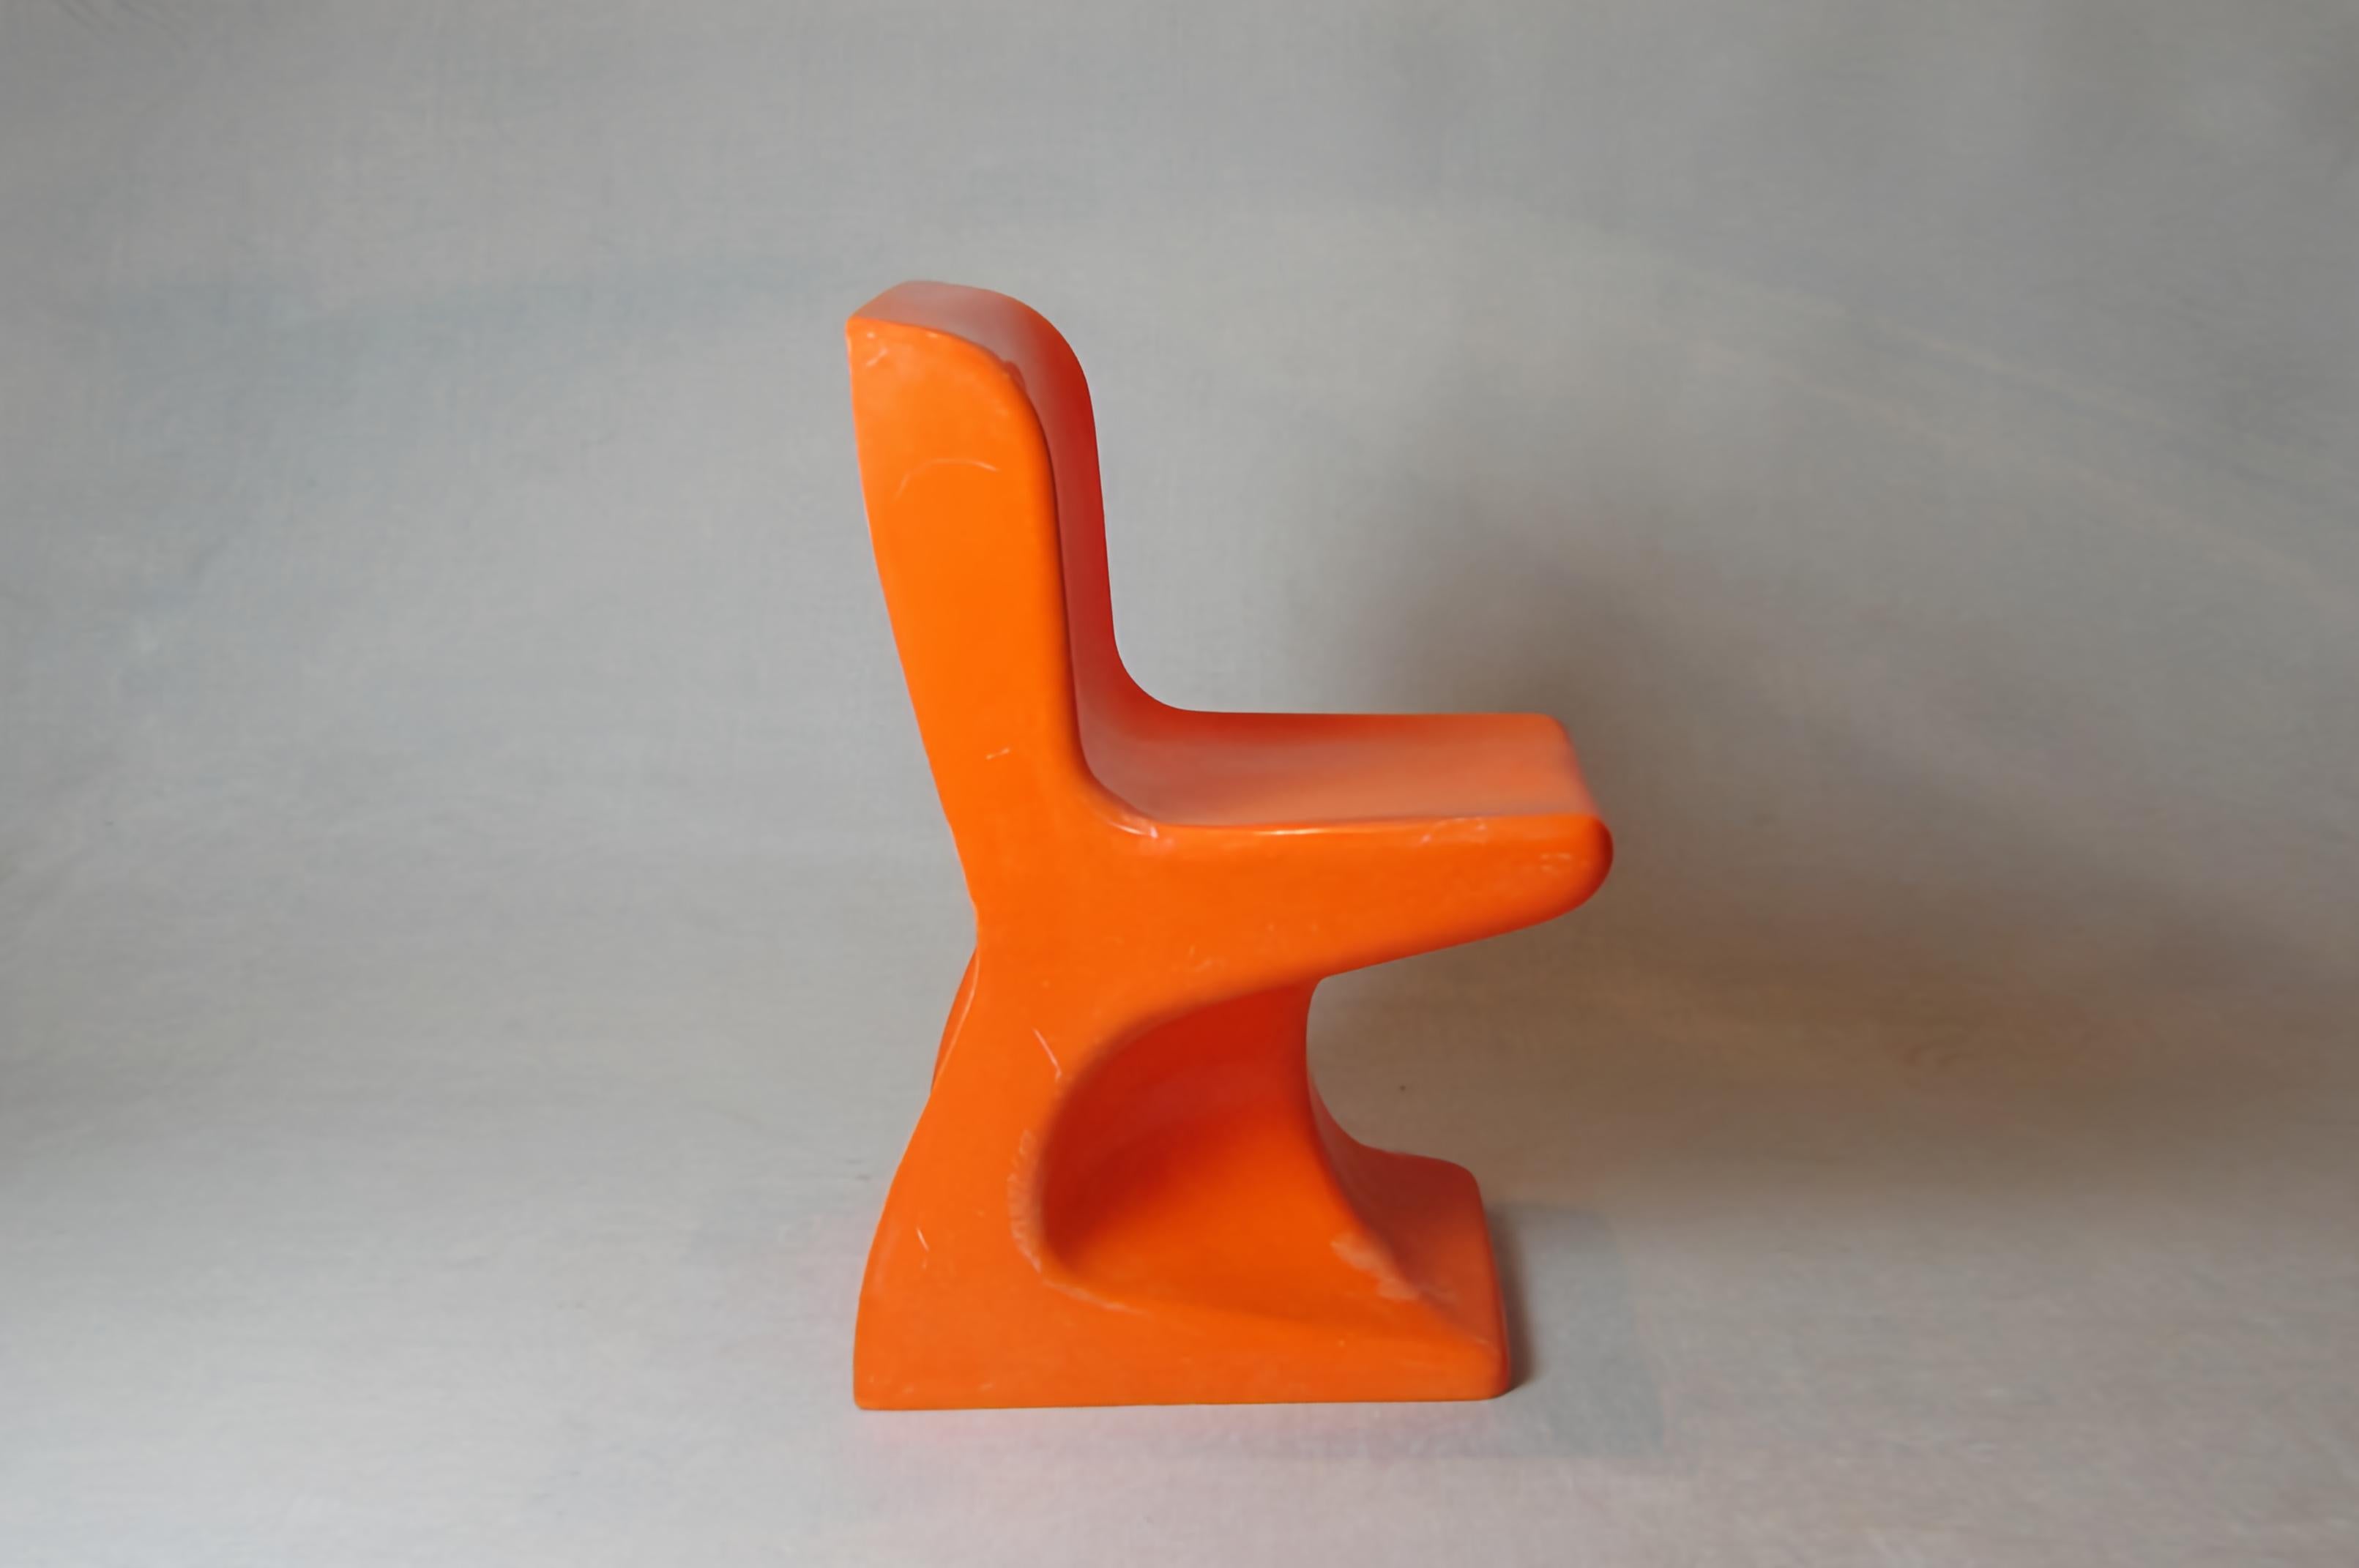 Stapelbarer Kinderstuhl, entworfen von Patrick Gingembre für S.E.L.A.P, Frankreich 1970. Sie bestehen aus orangefarbenem Kunststoff mit einer organischen Form, die sehr charakteristisch für den Pop- und Space Age